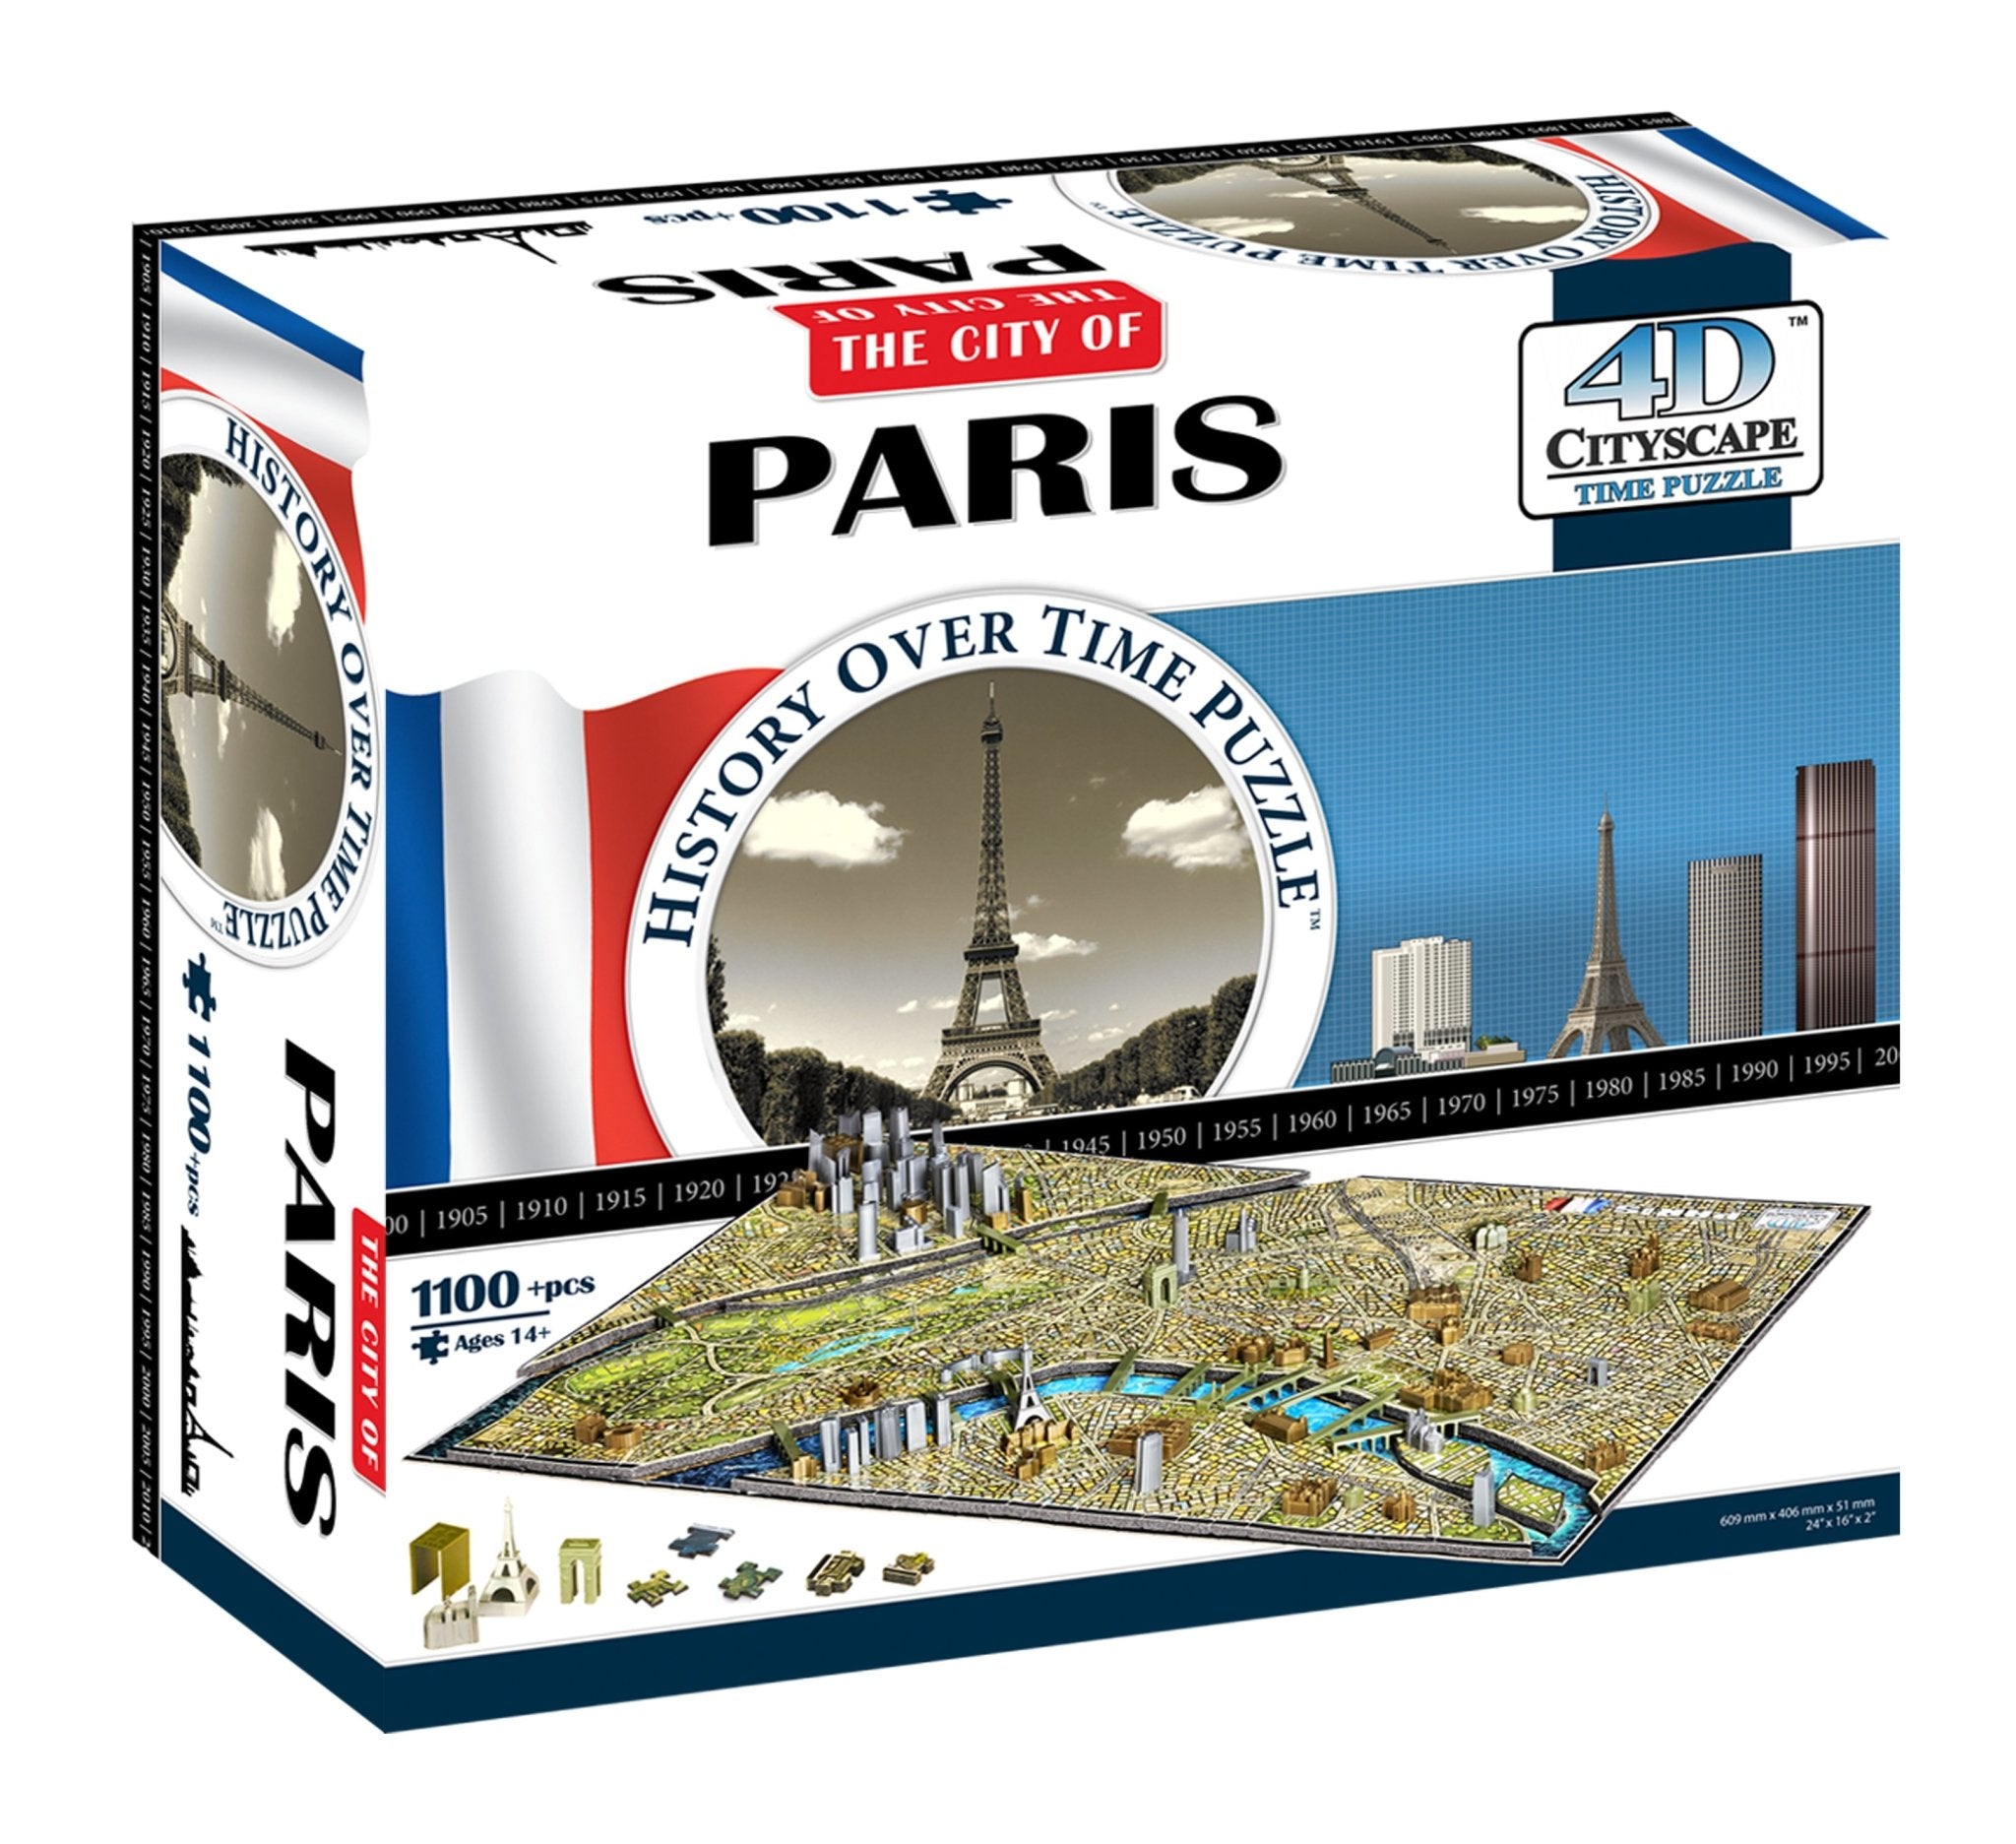 4D Cityscape Paris Time Puzzle - 4DPuzz - 4DPuzz
